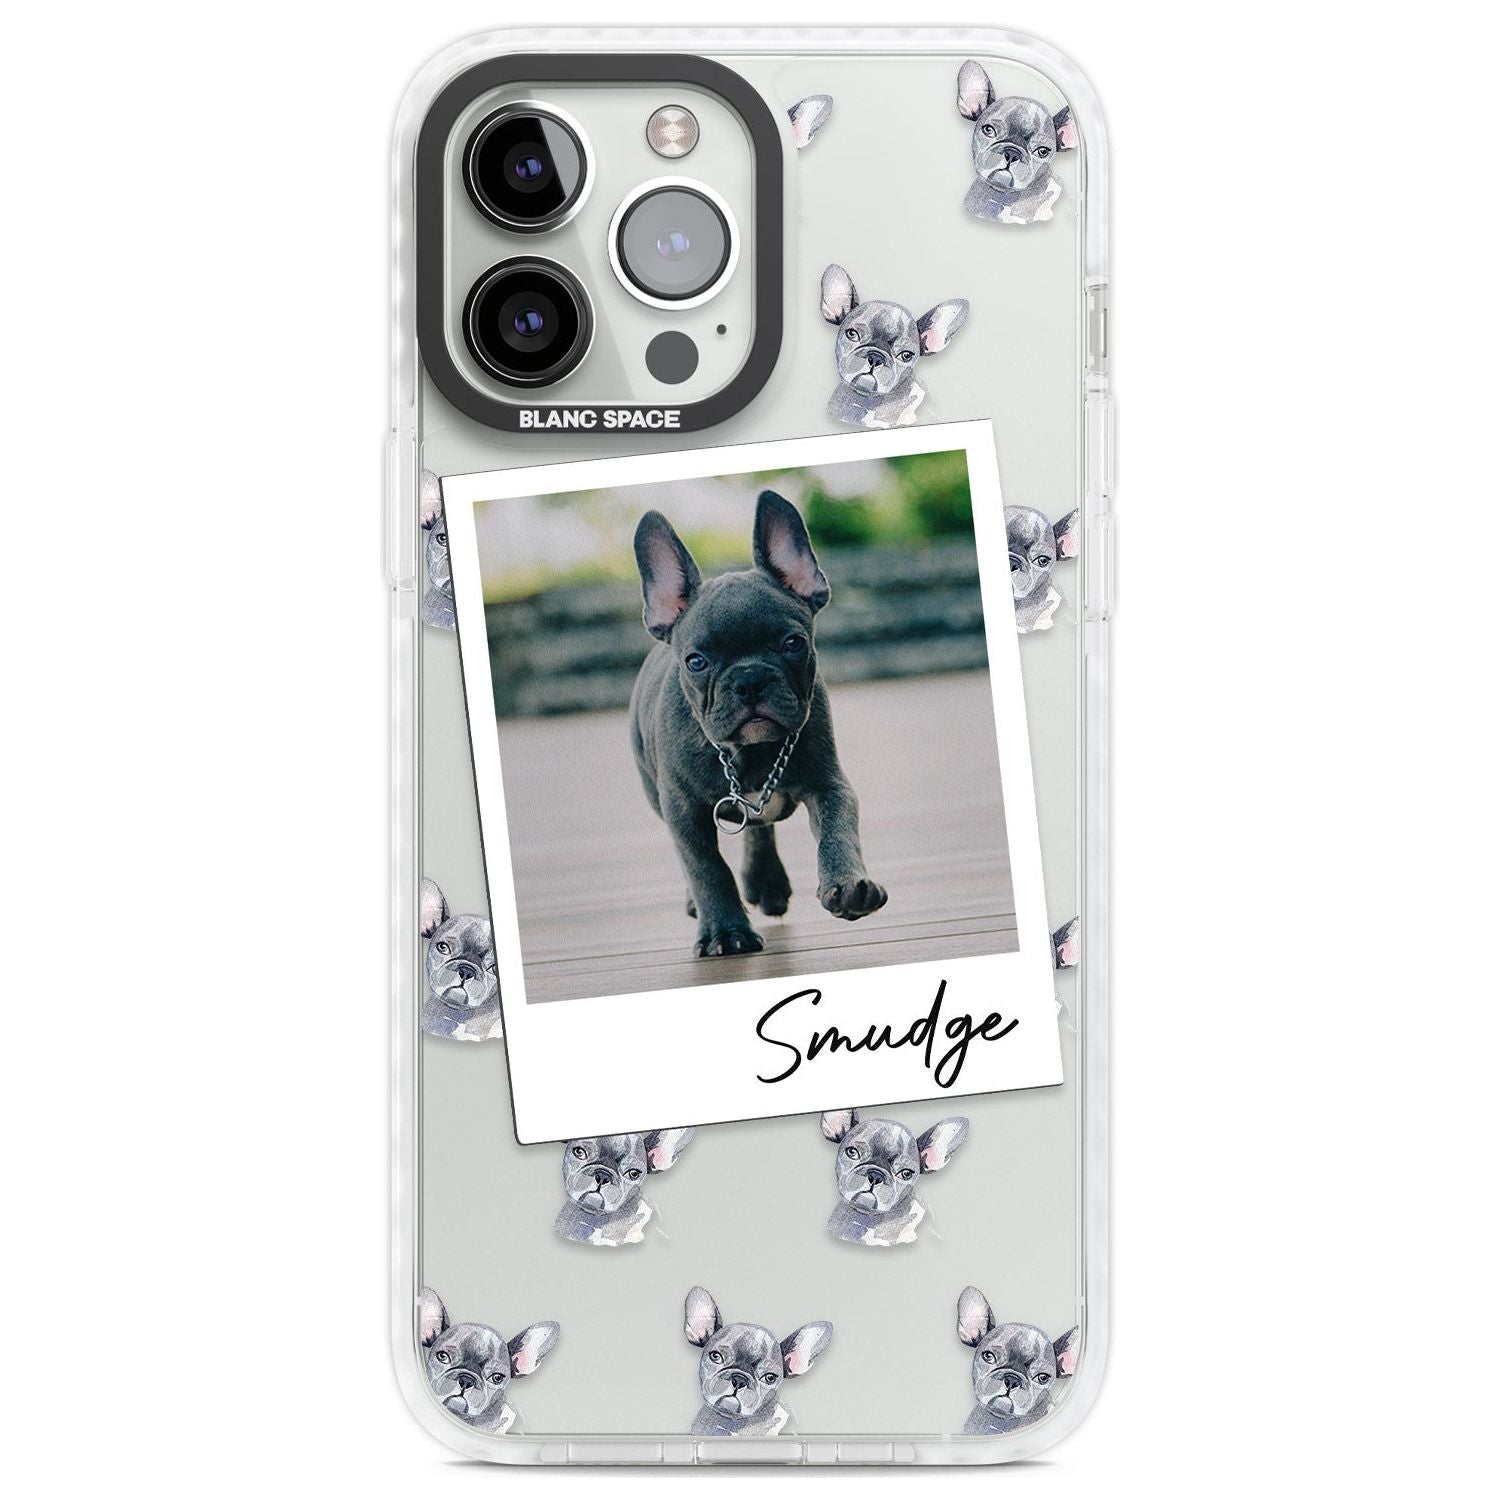 Personalised French Bulldog, Grey - Dog Photo Custom Phone Case iPhone 13 Pro Max / Impact Case,iPhone 14 Pro Max / Impact Case Blanc Space